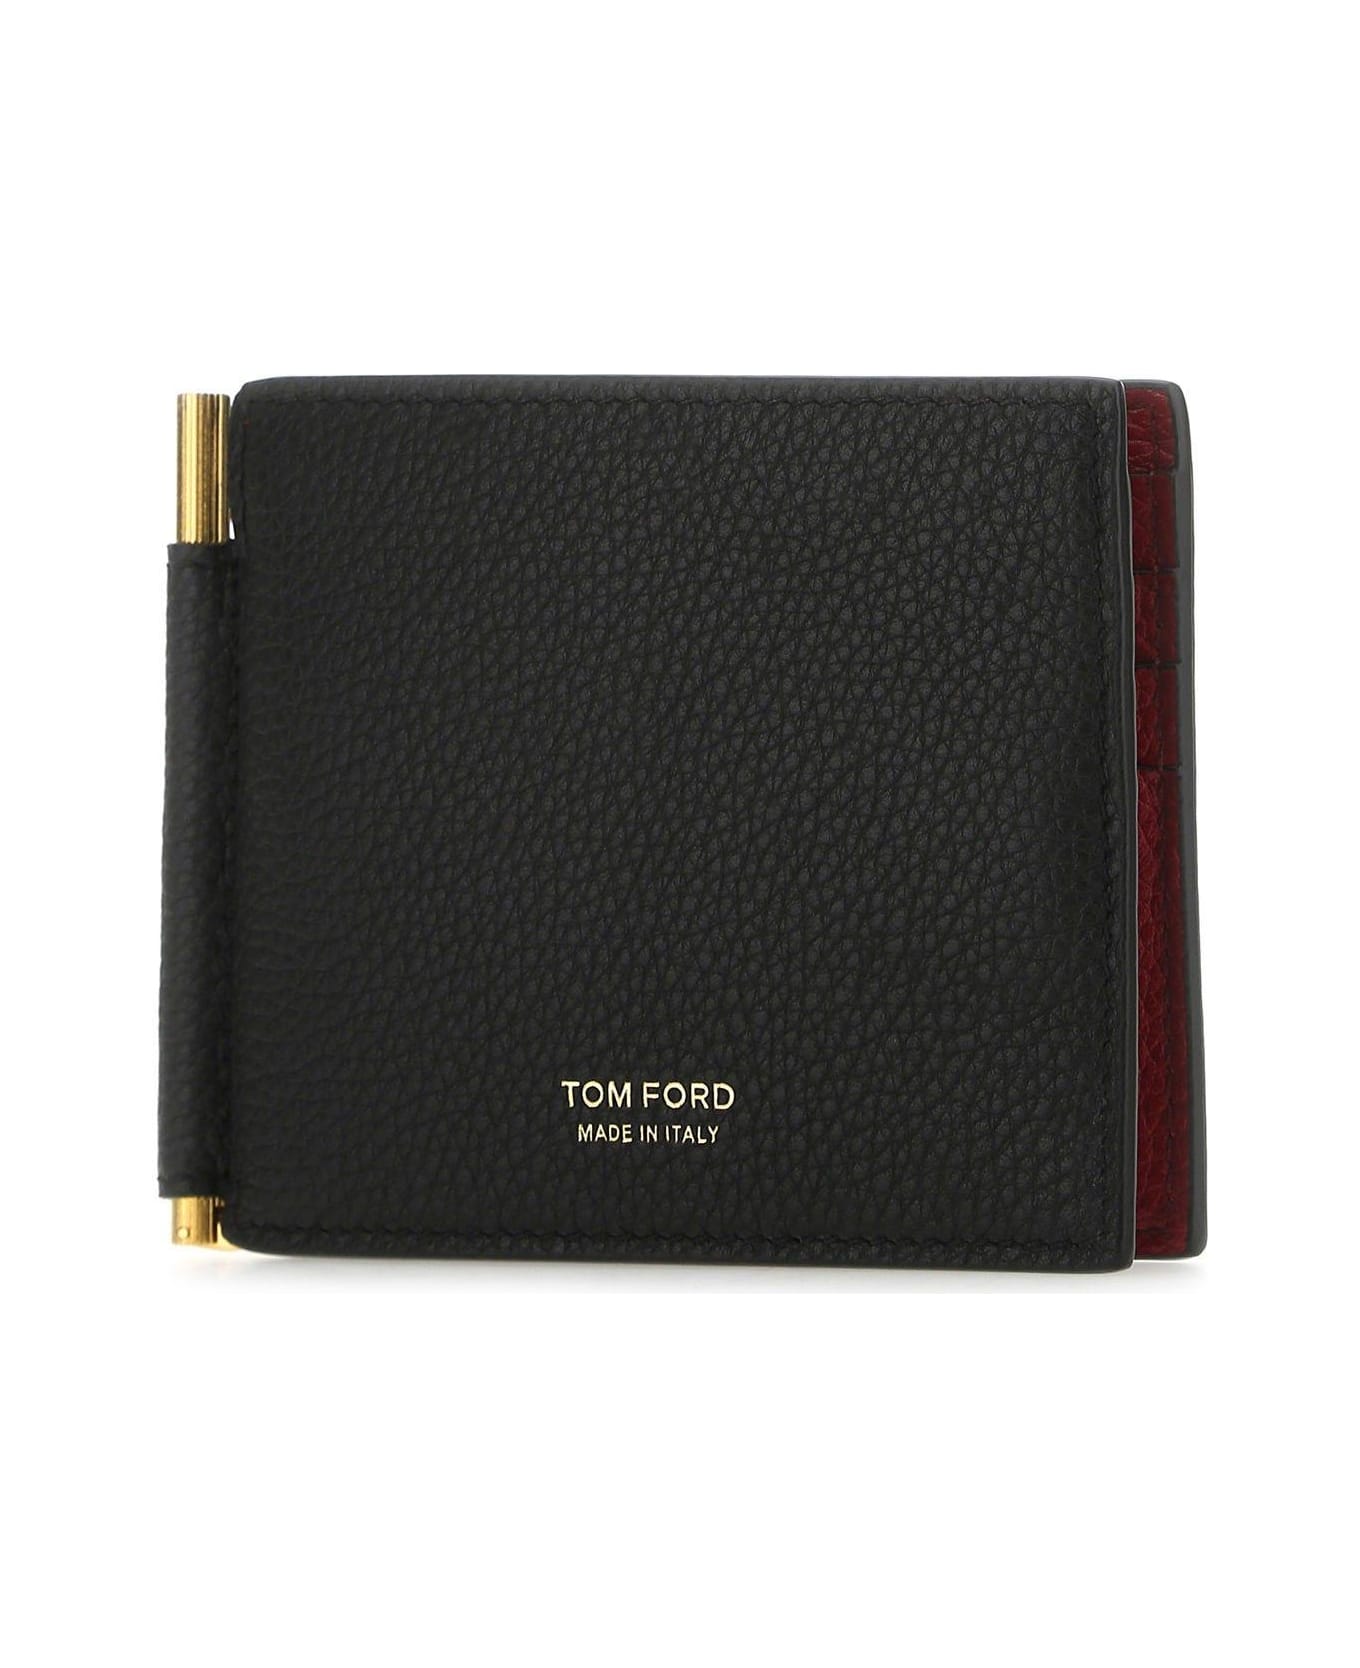 Tom Ford Black Leather Card Holder - BLACK RED